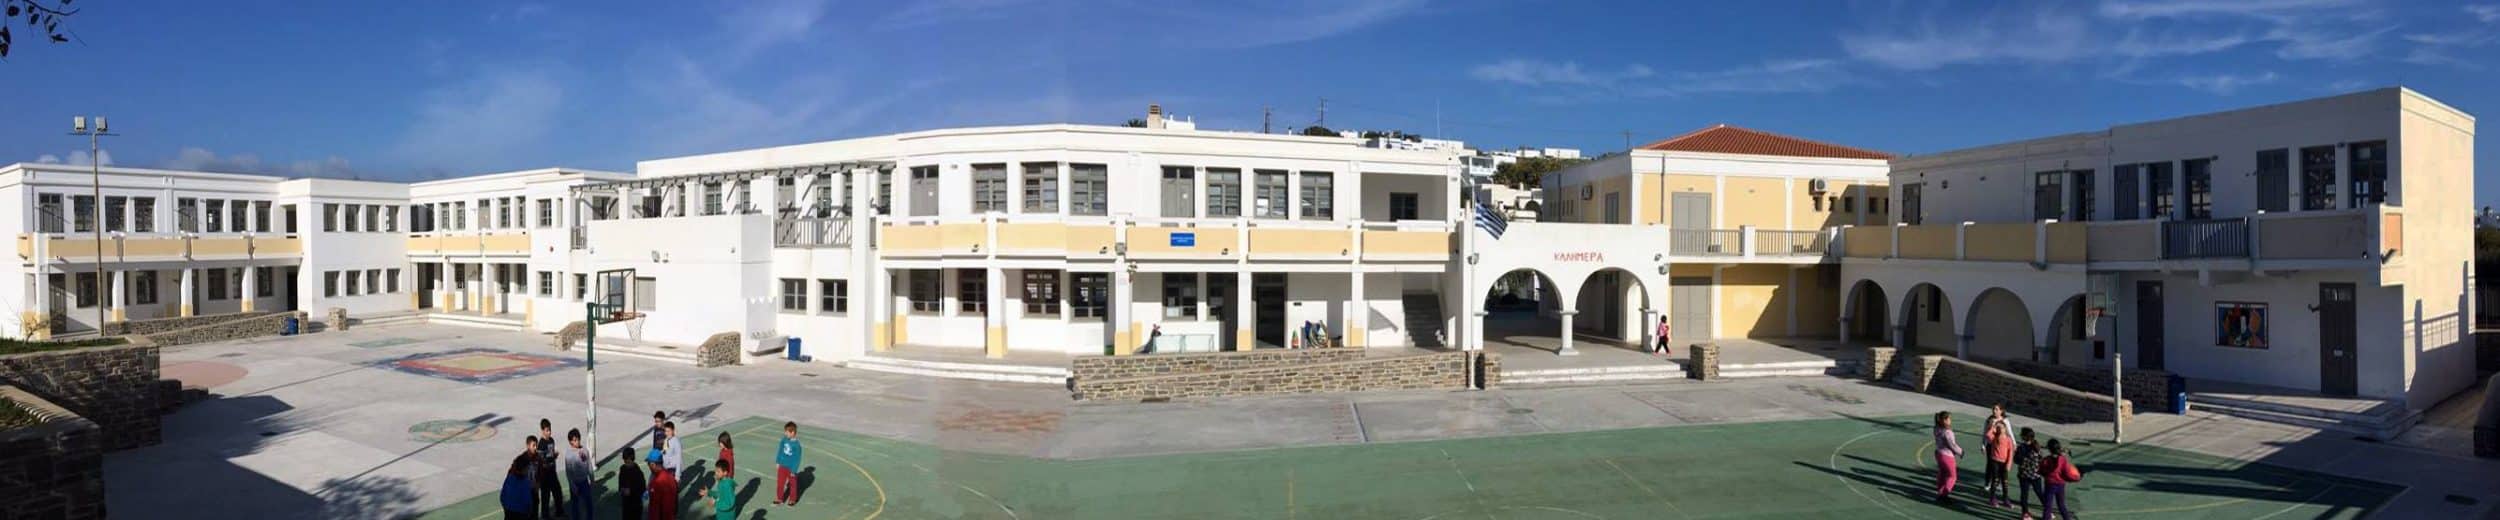 Το Δ3 τμήμα του δημοτικού σχολείου Νάουσας Πάρου, η πρώτη τάξη που κλείνει στις Κυκλάδες λόγω κρούσματος κορωνοϊού